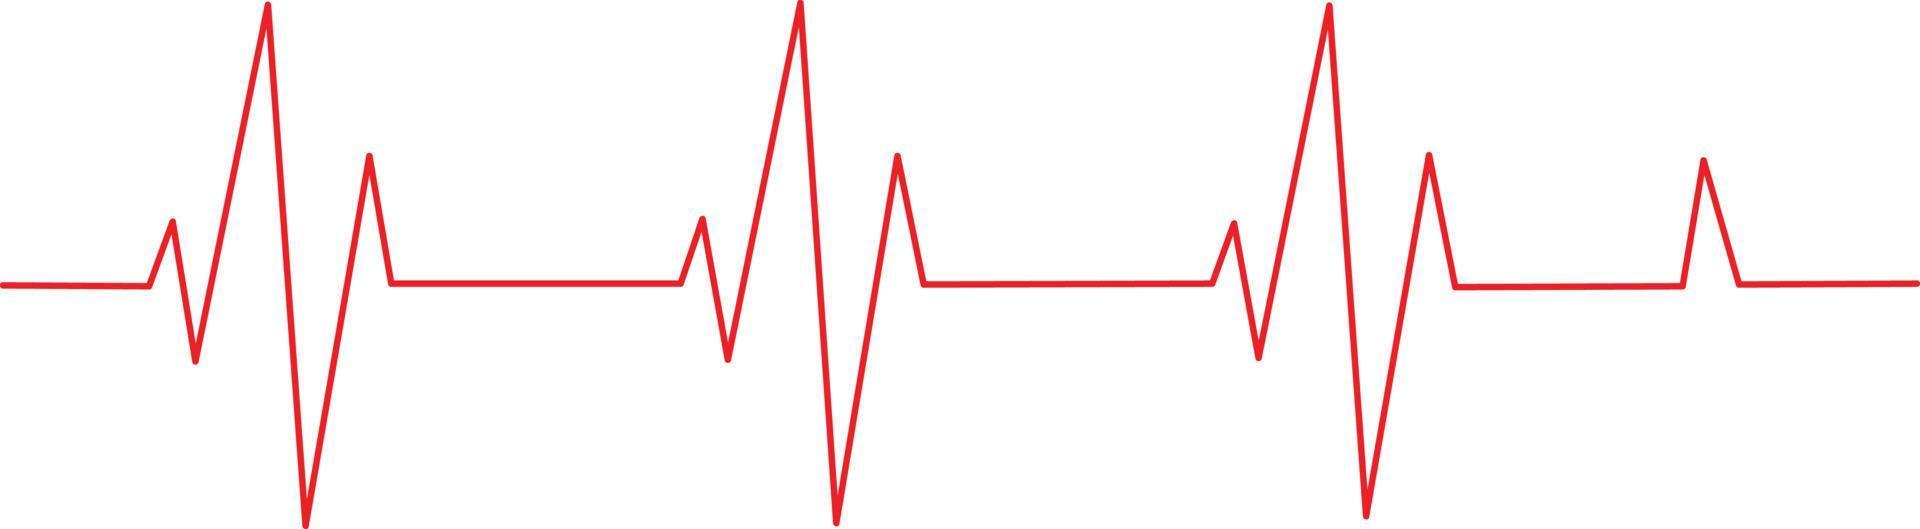 modello vettoriale della linea di impulso sul retro bianco. l'onda del cuore è su uno sfondo bianco. modello di vettore di impulso del battito cardiaco medico di progettazione di arte.